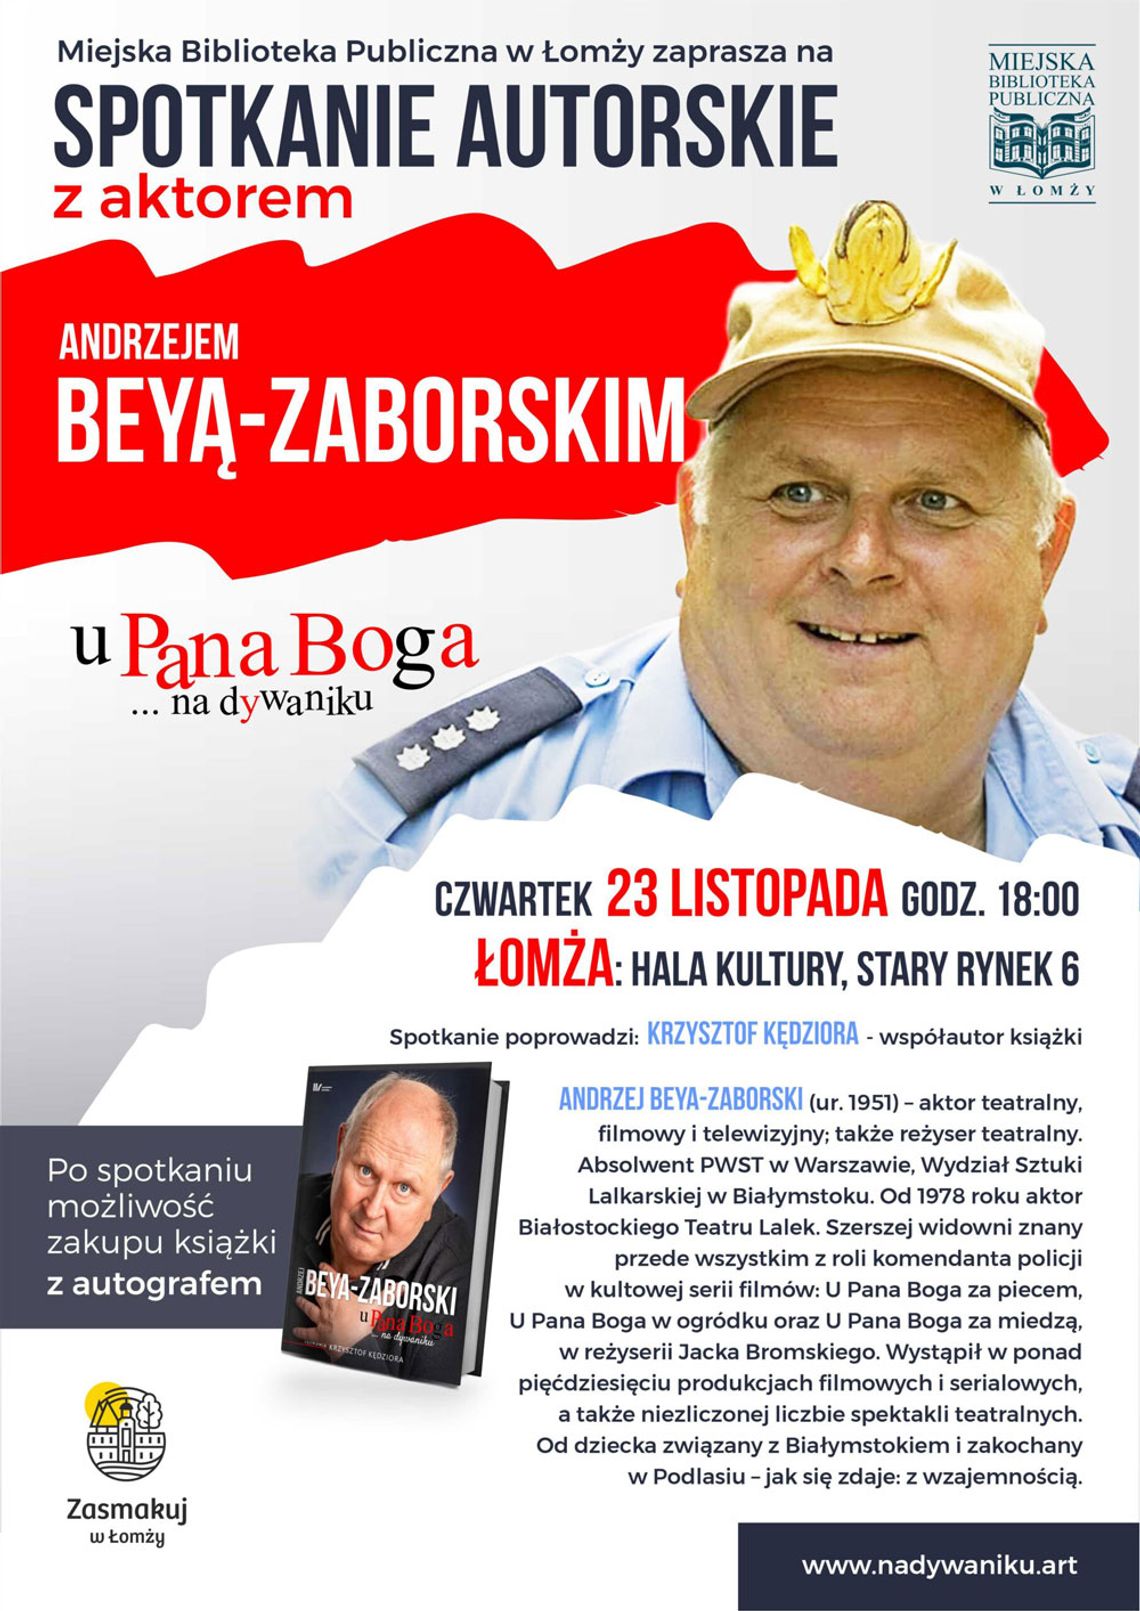 Spotkanie autorskie z Andrzejem Beyą-Zaborskim